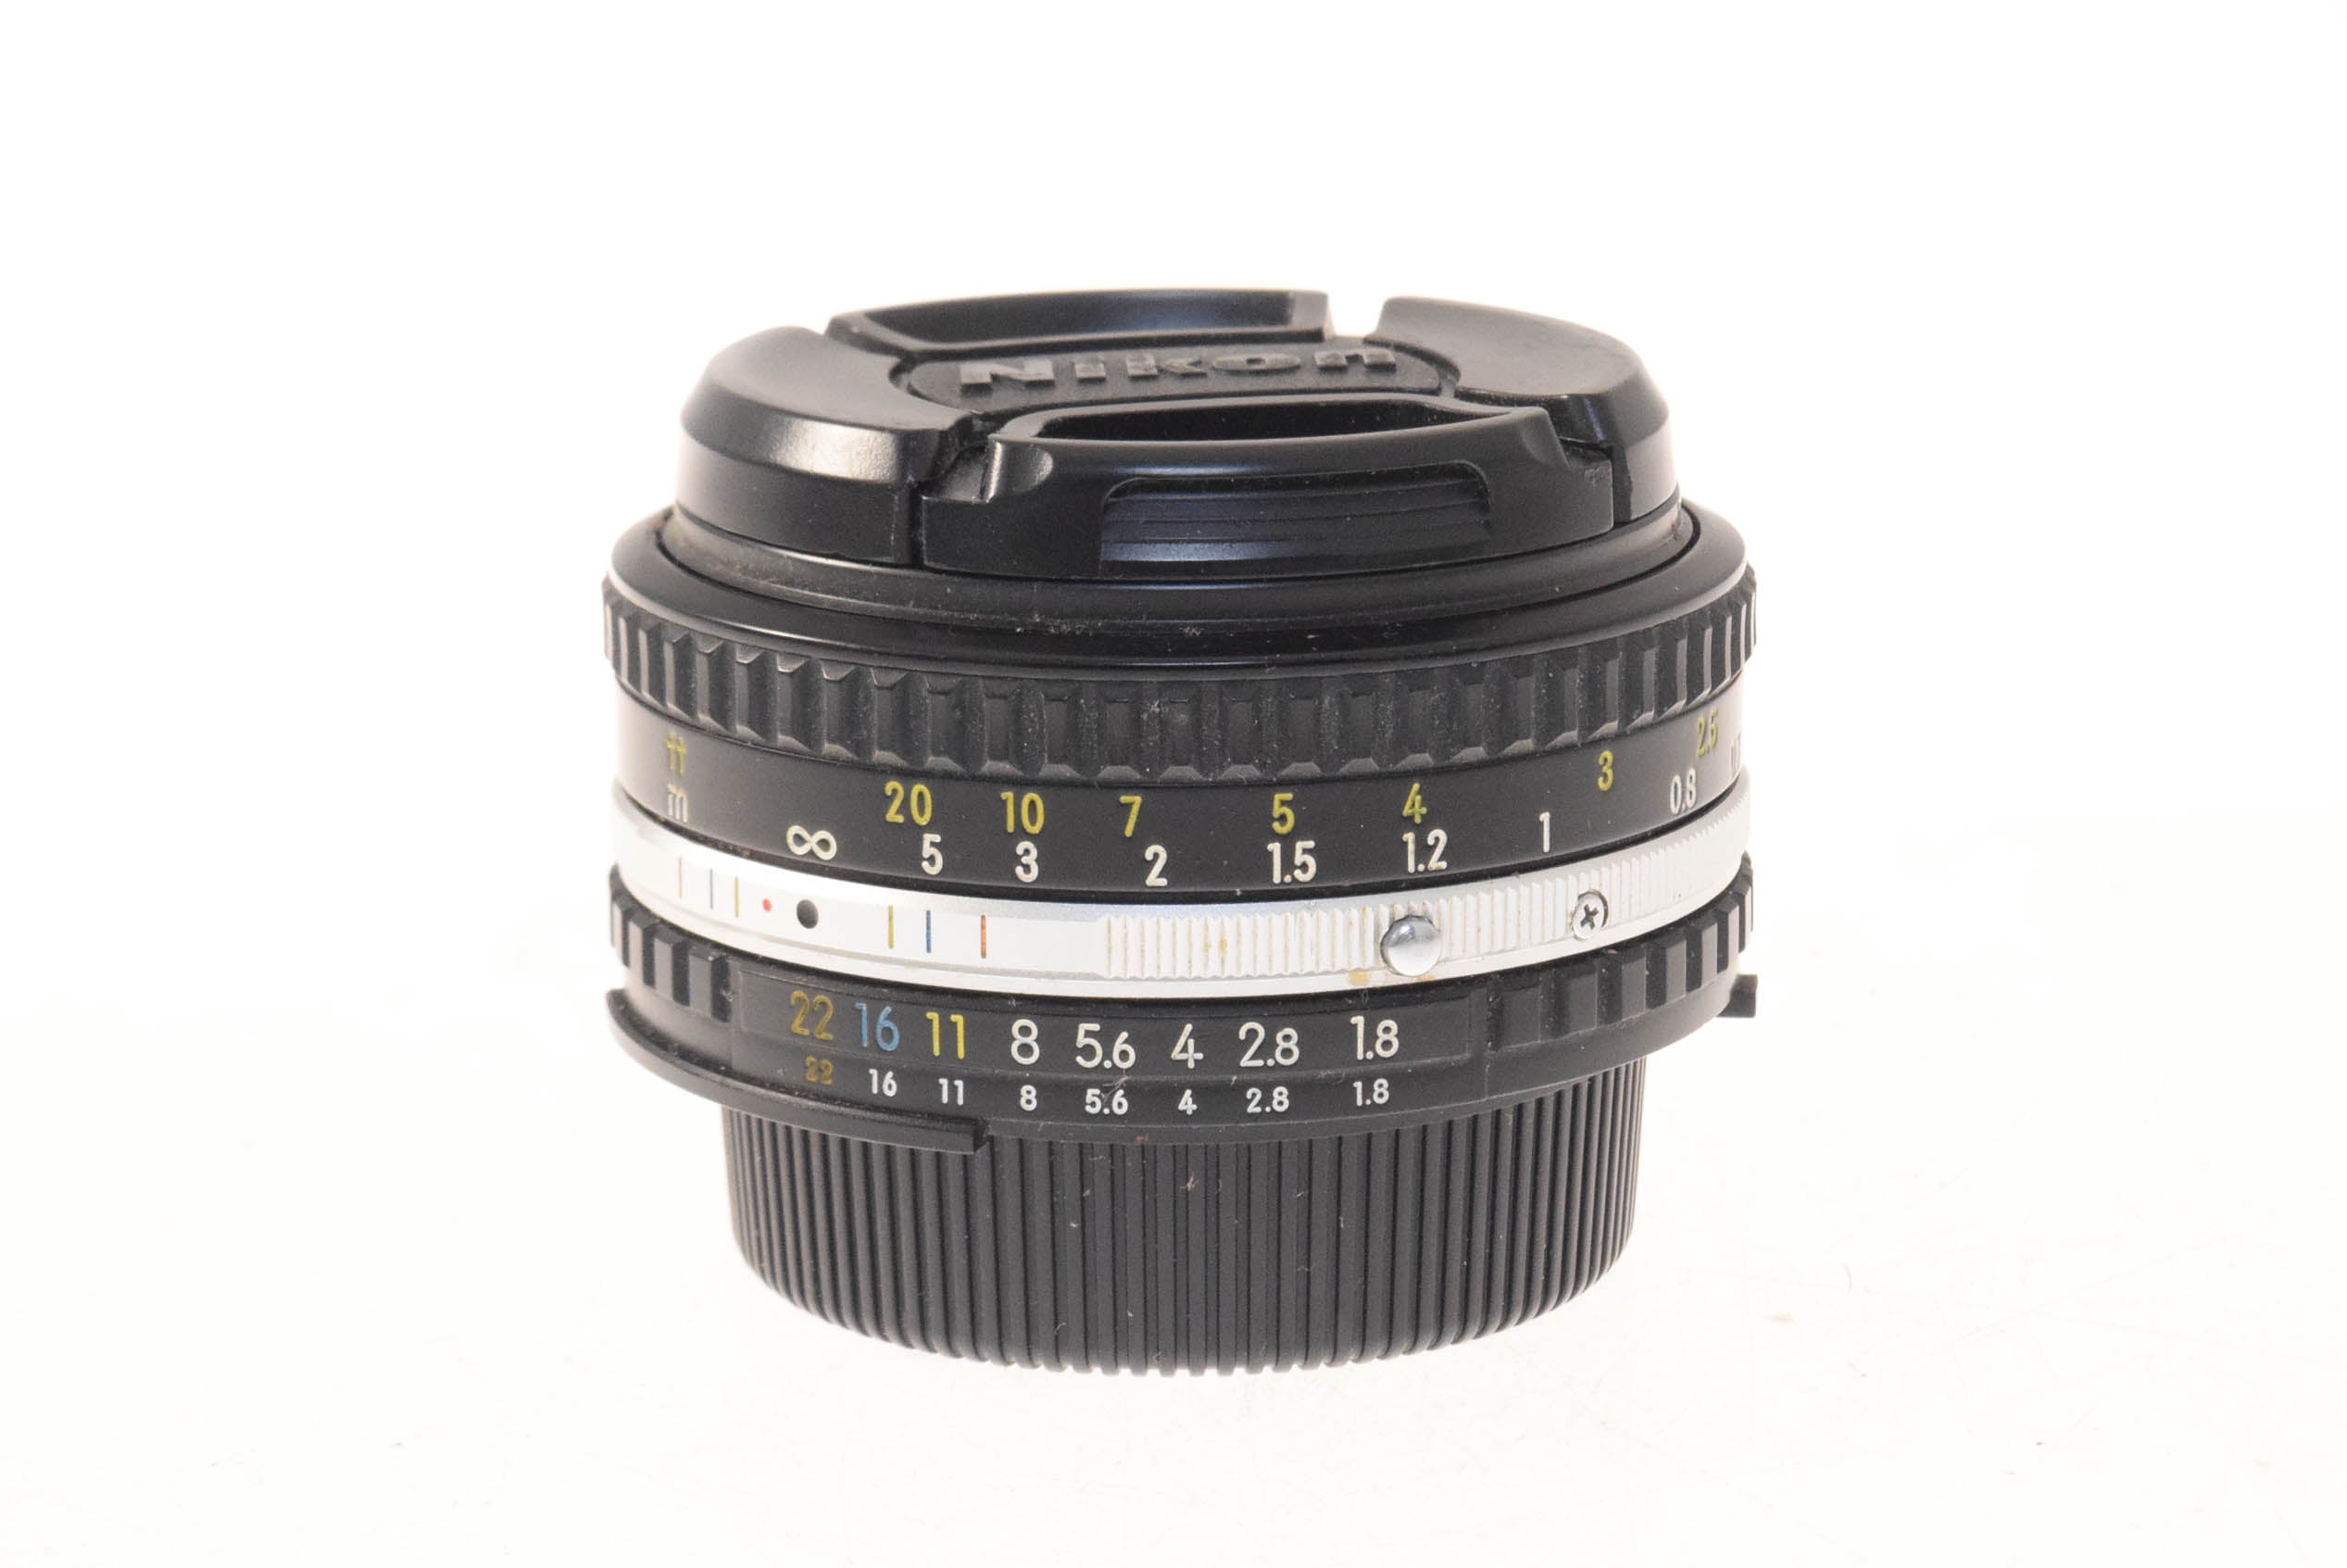 Nikon 35mm f2.8 Nikkor AI-S - Lens